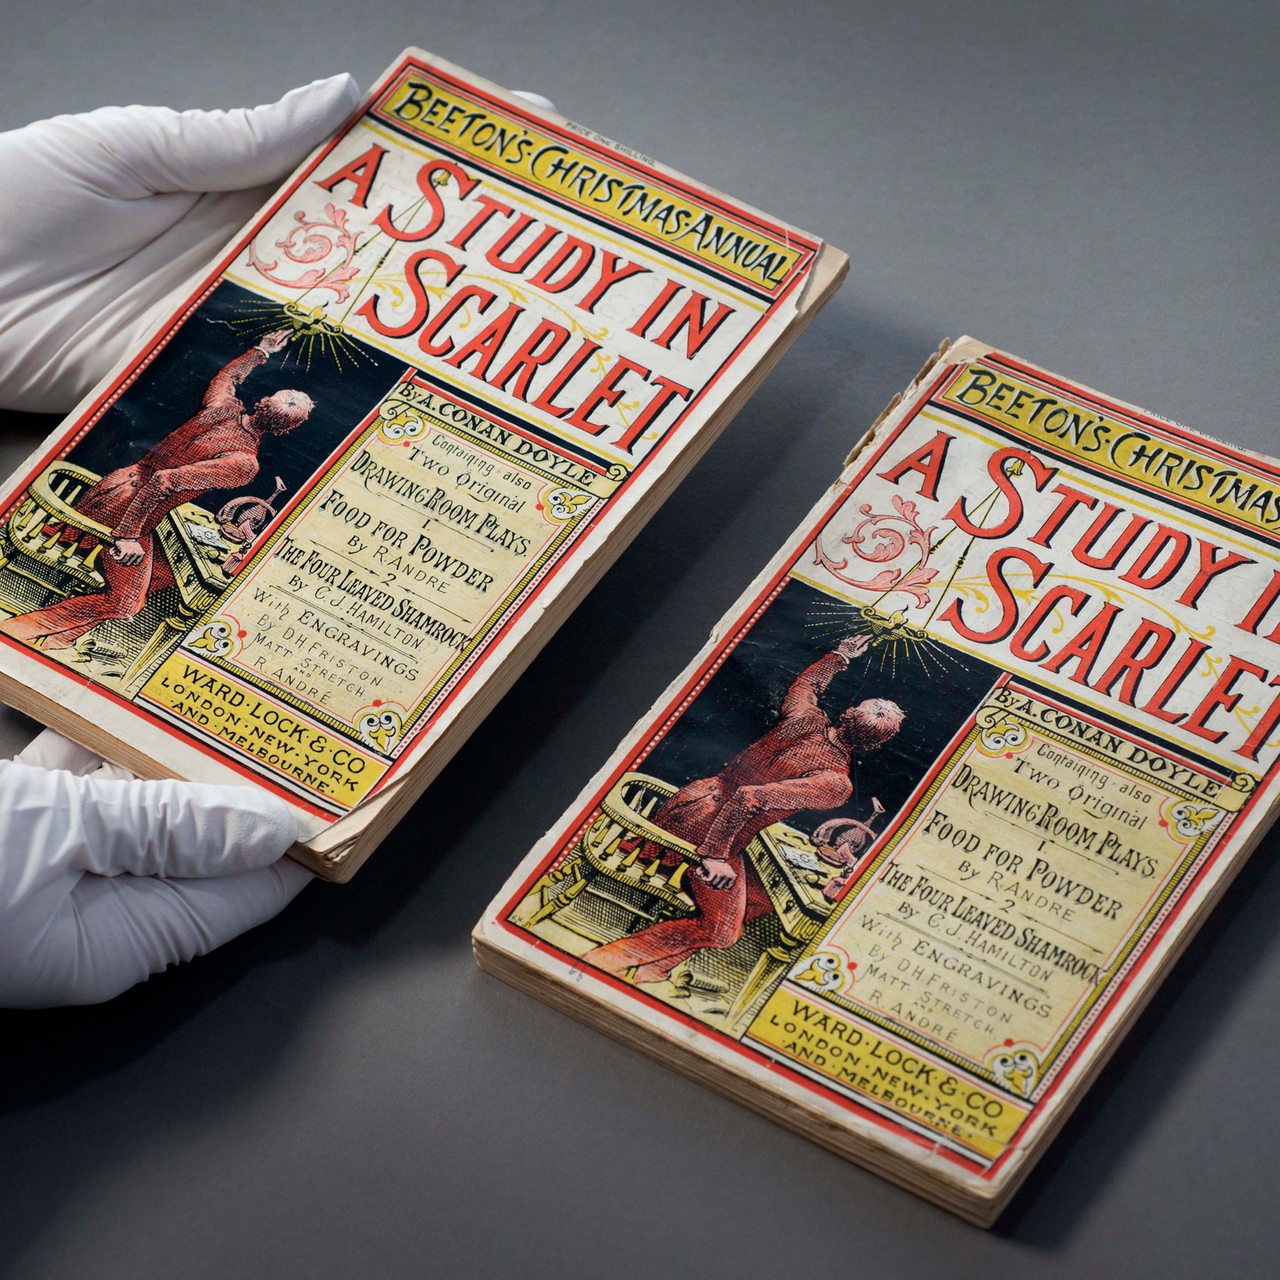 "A Study In Scarlett", erste Geschichte von Sir Conan Doyle und Geburtsstunde von Sherlock Holmes